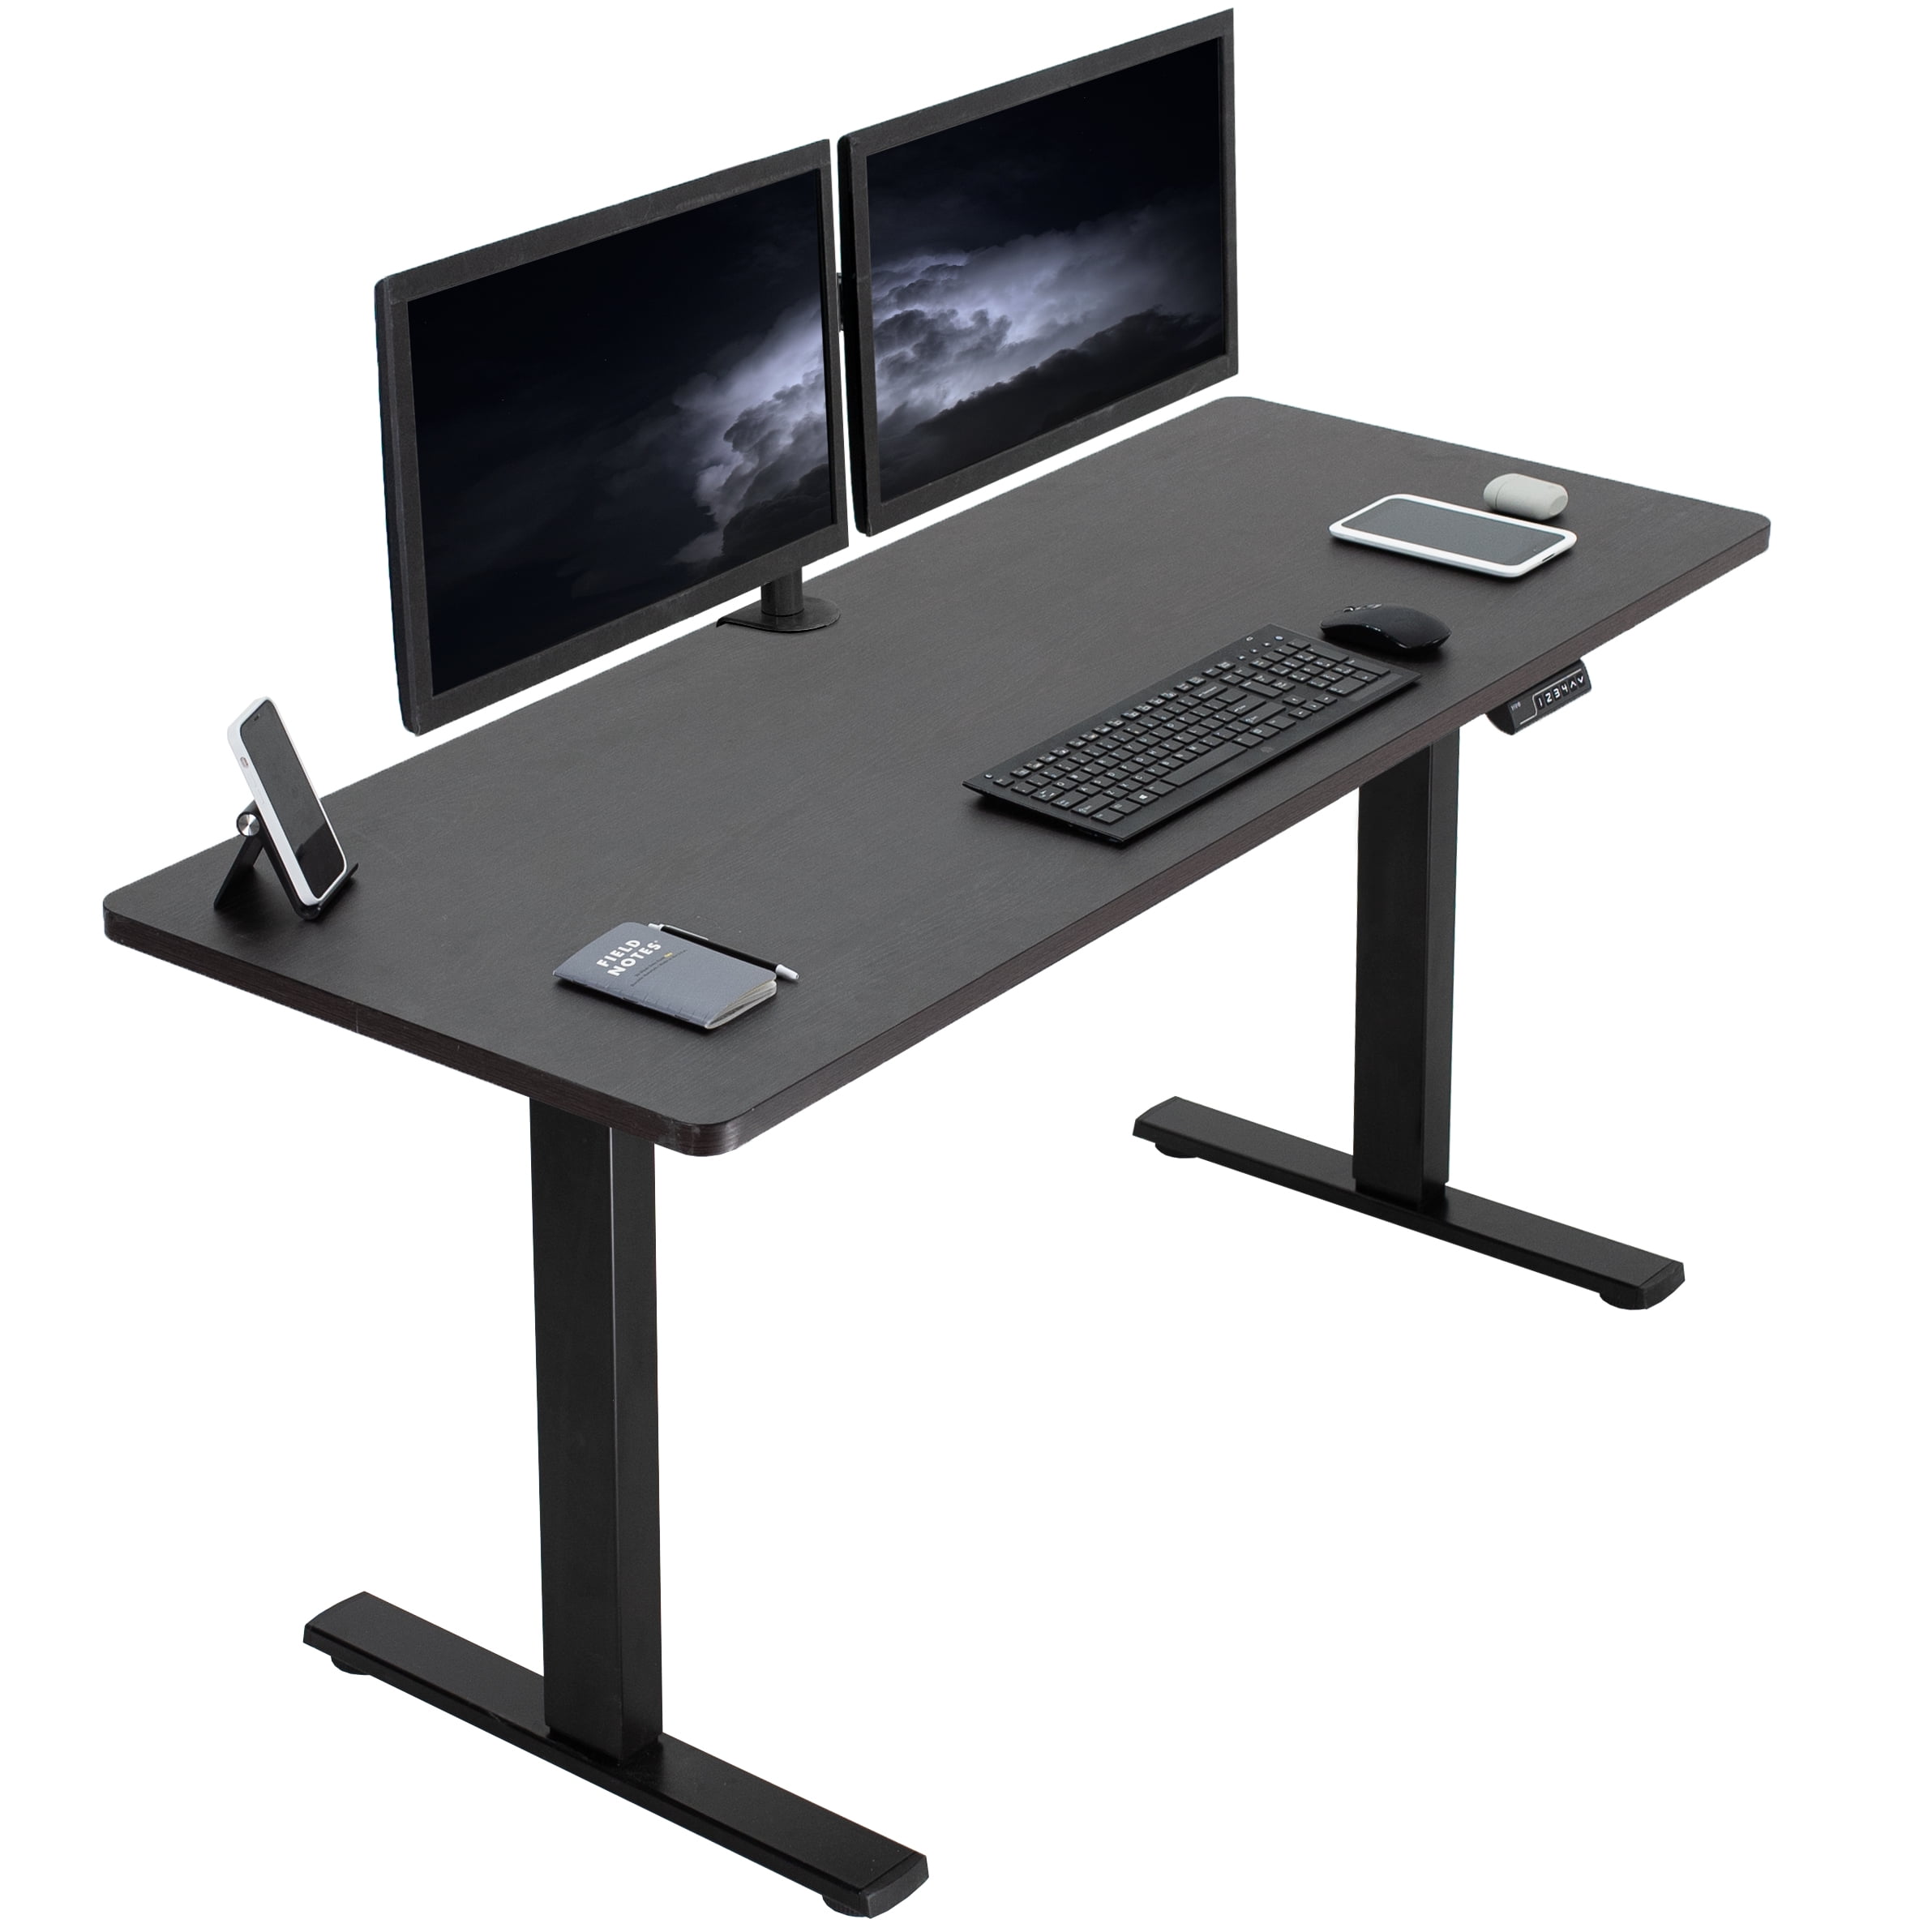 BestMassage 5829689288 Standing Computer Desk - Black for sale online